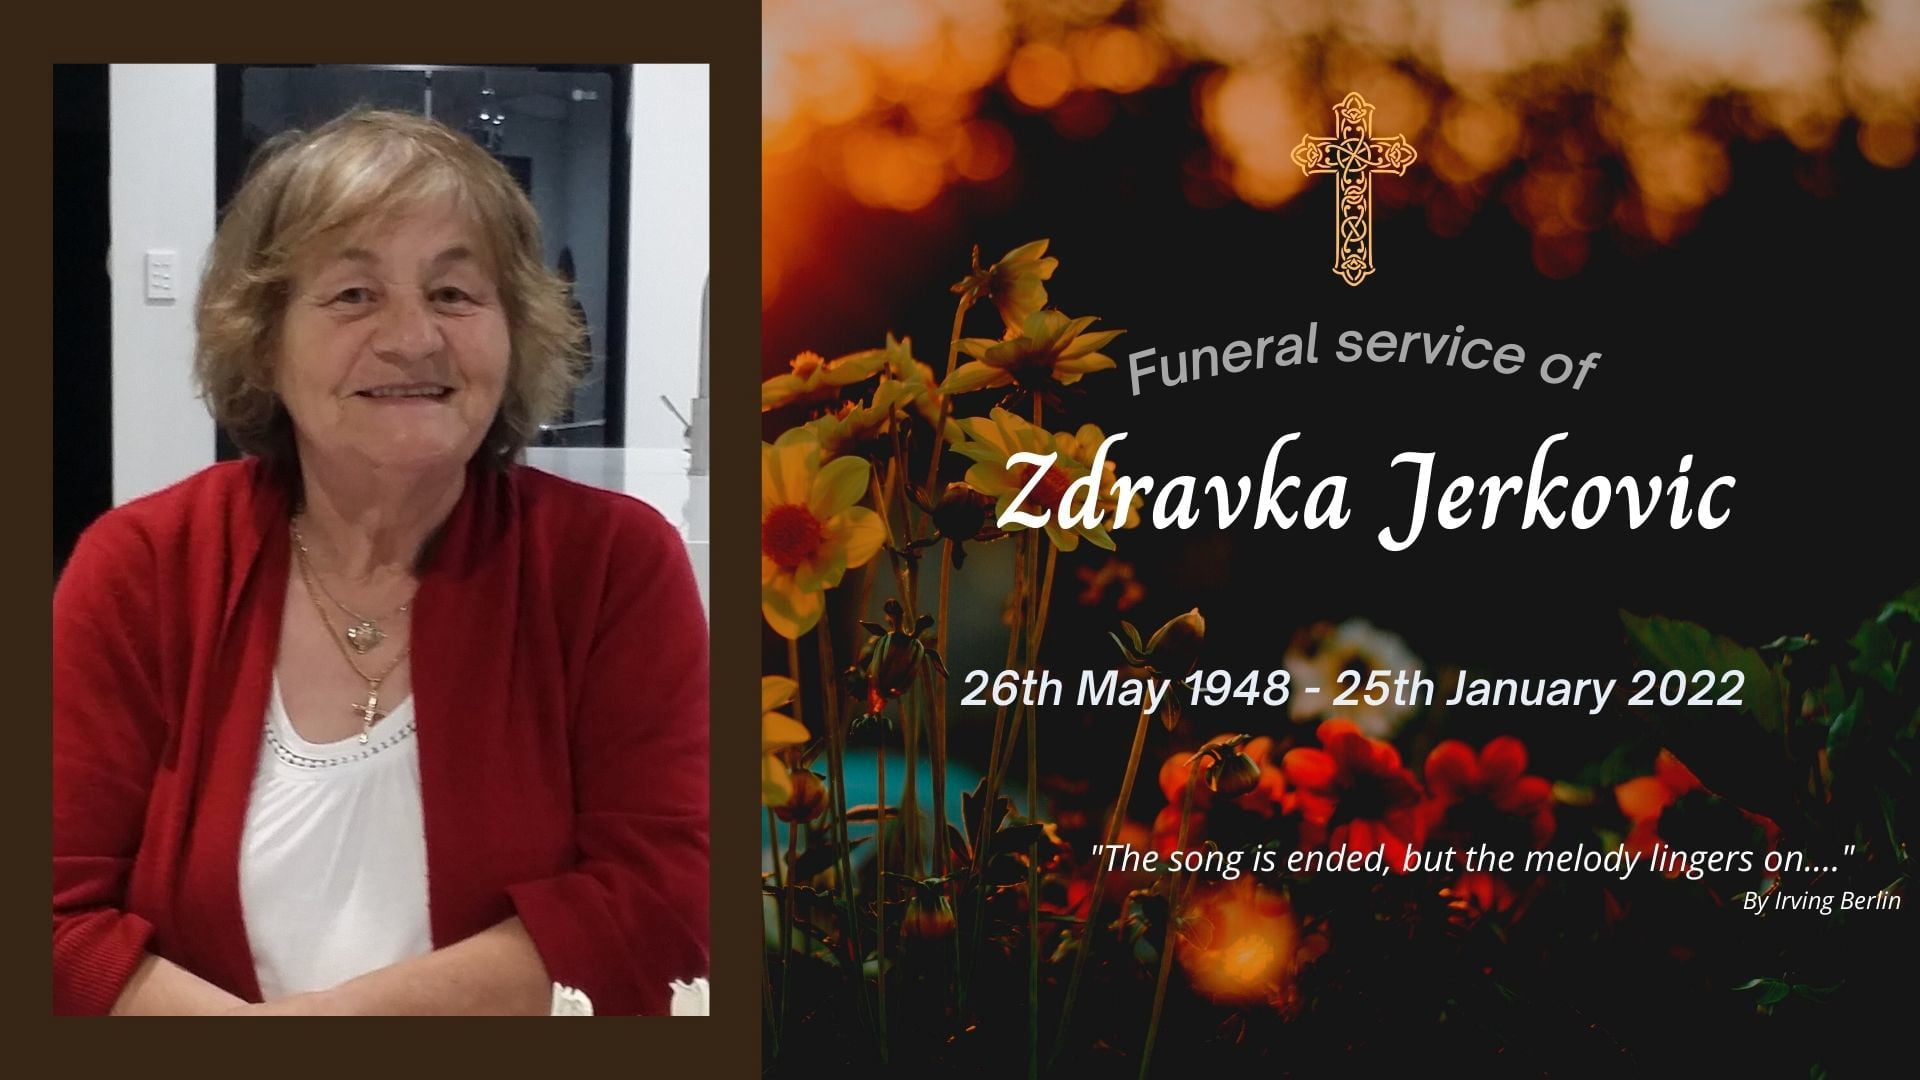 Funeral service of Zdravka Jerkovic